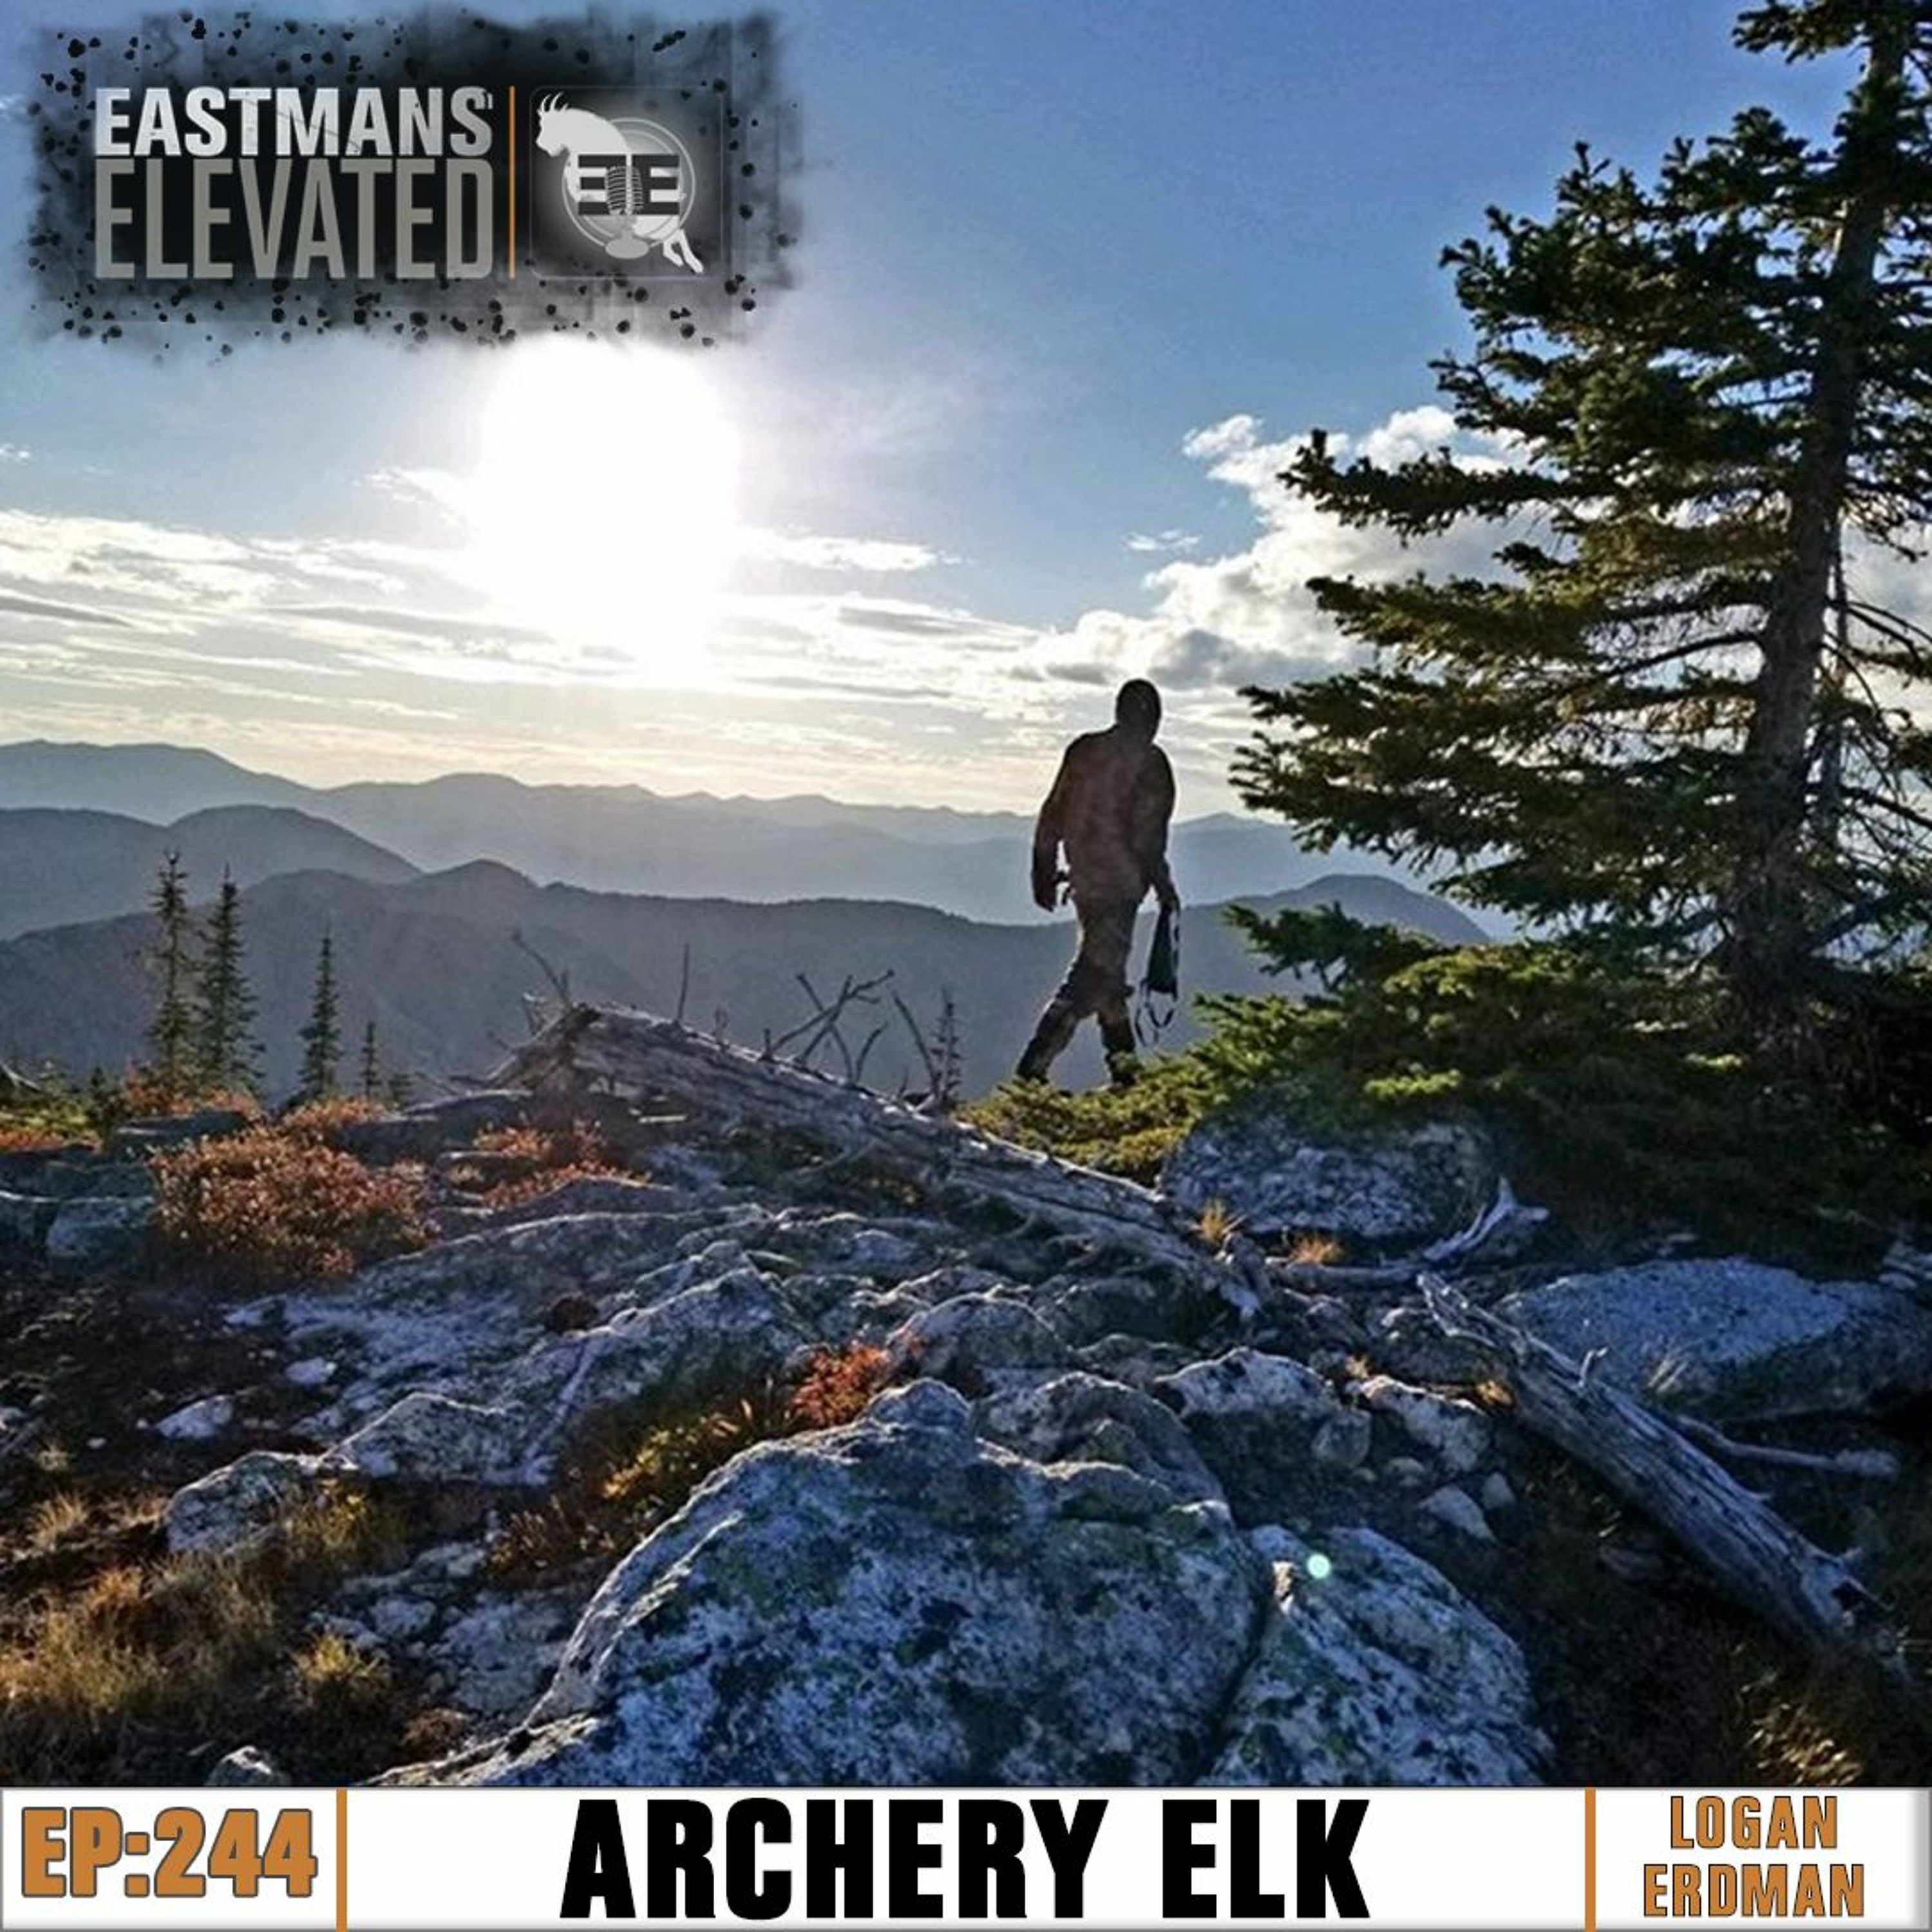 Episode 244: Archery Elk with Logan Erdman